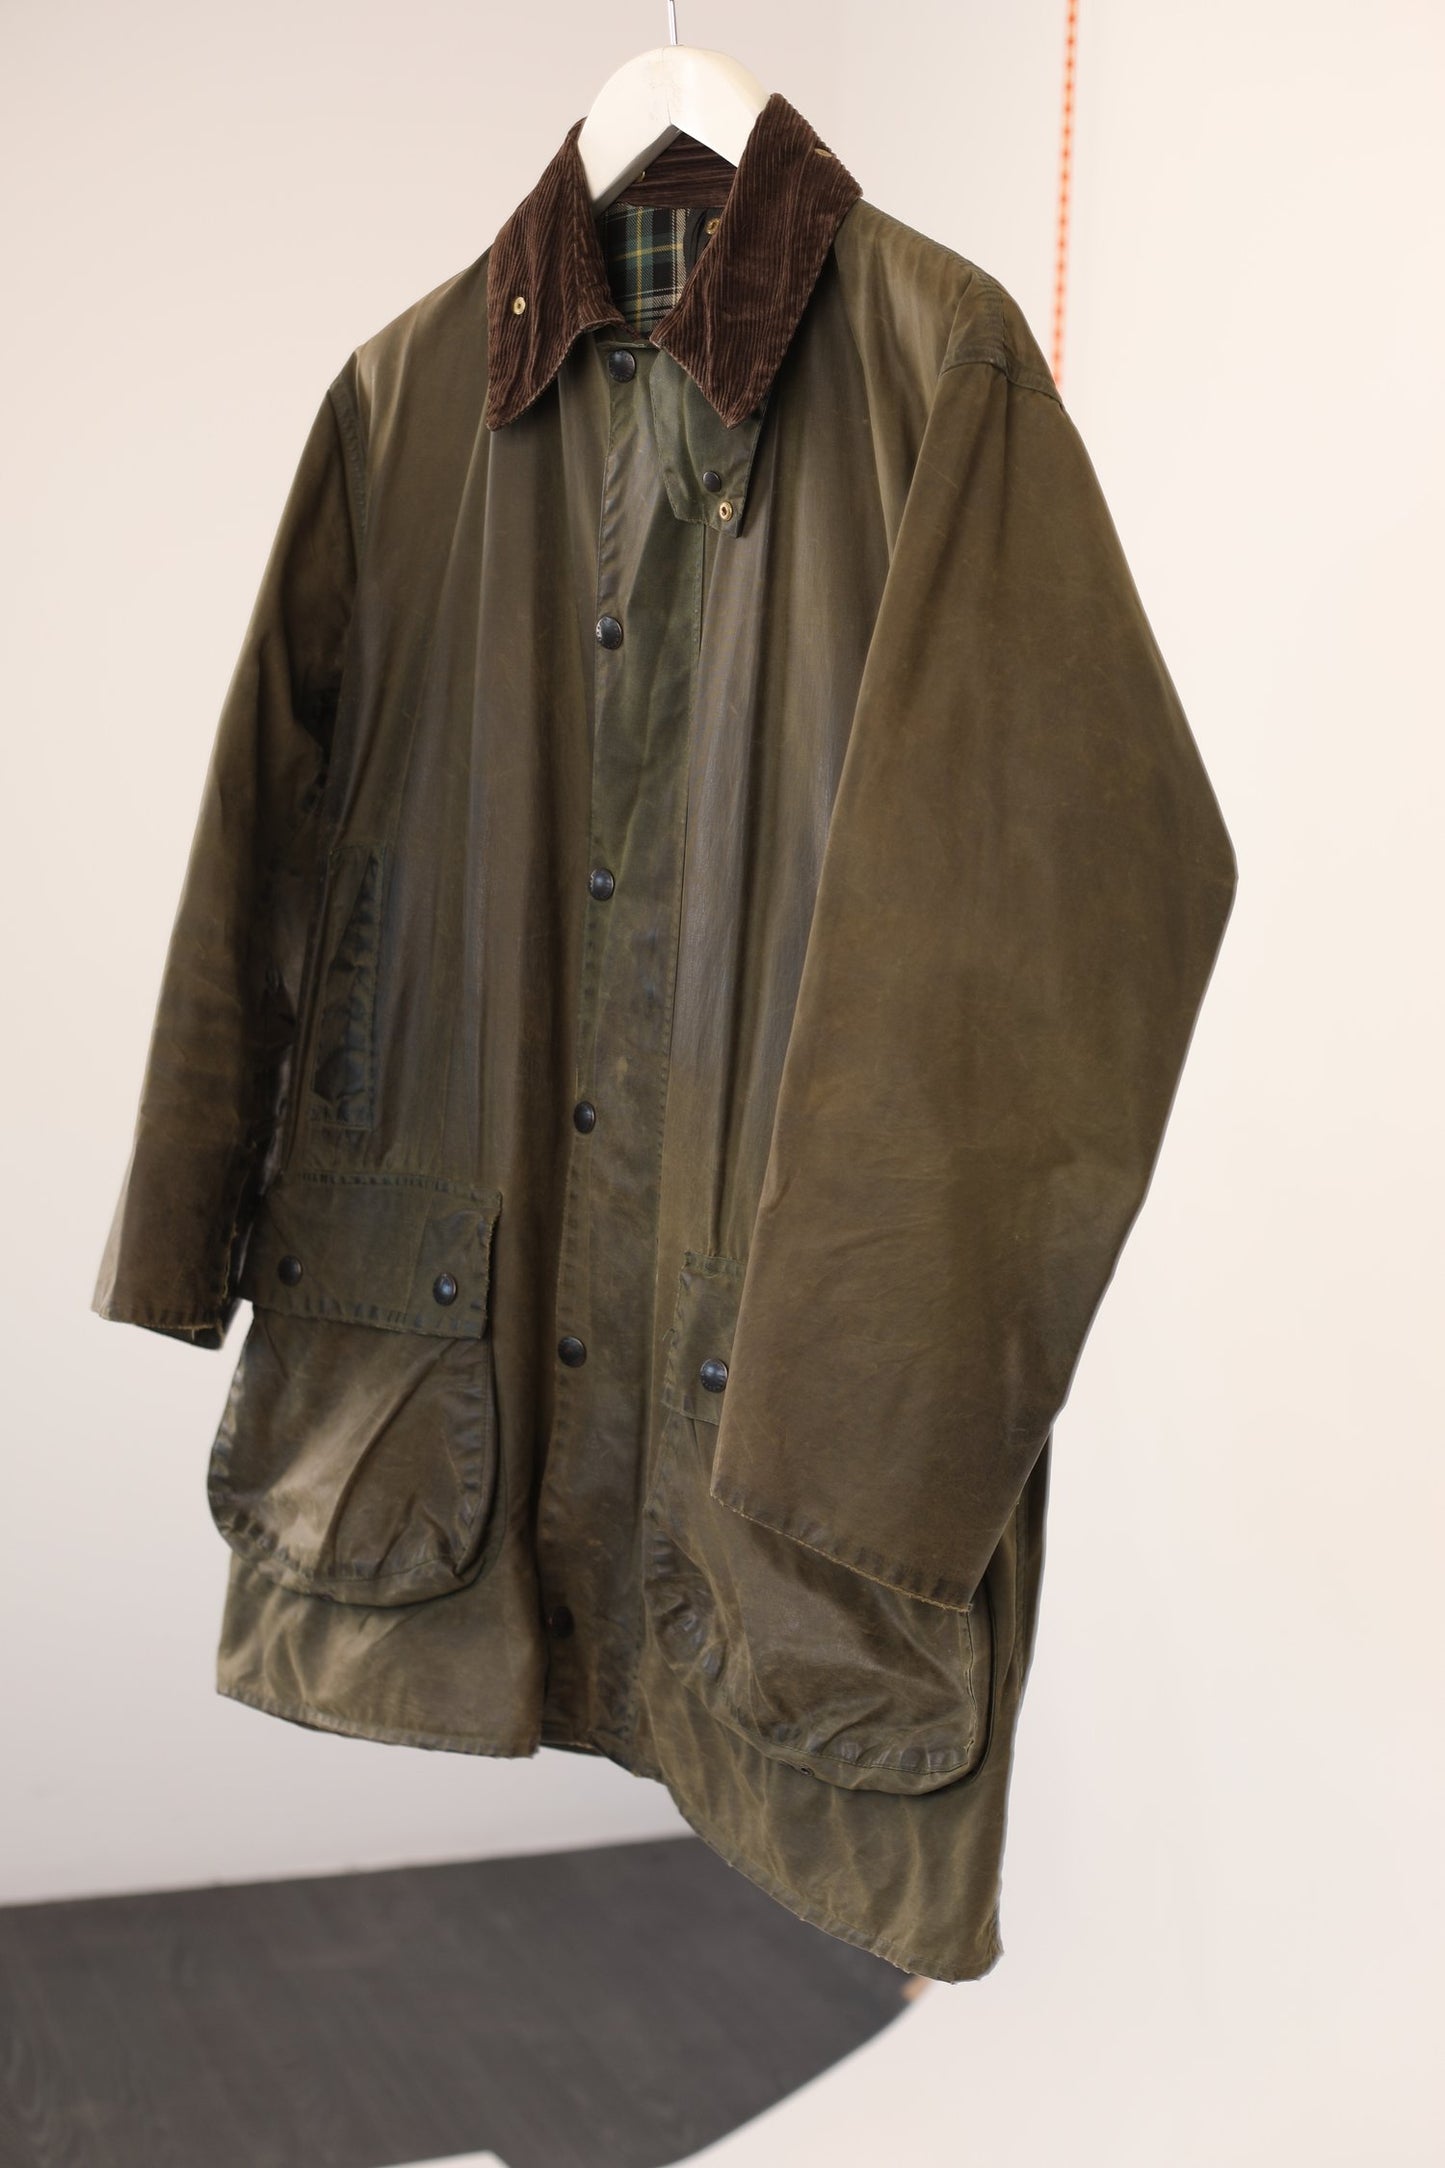 1991 Barbour Border wax jacket